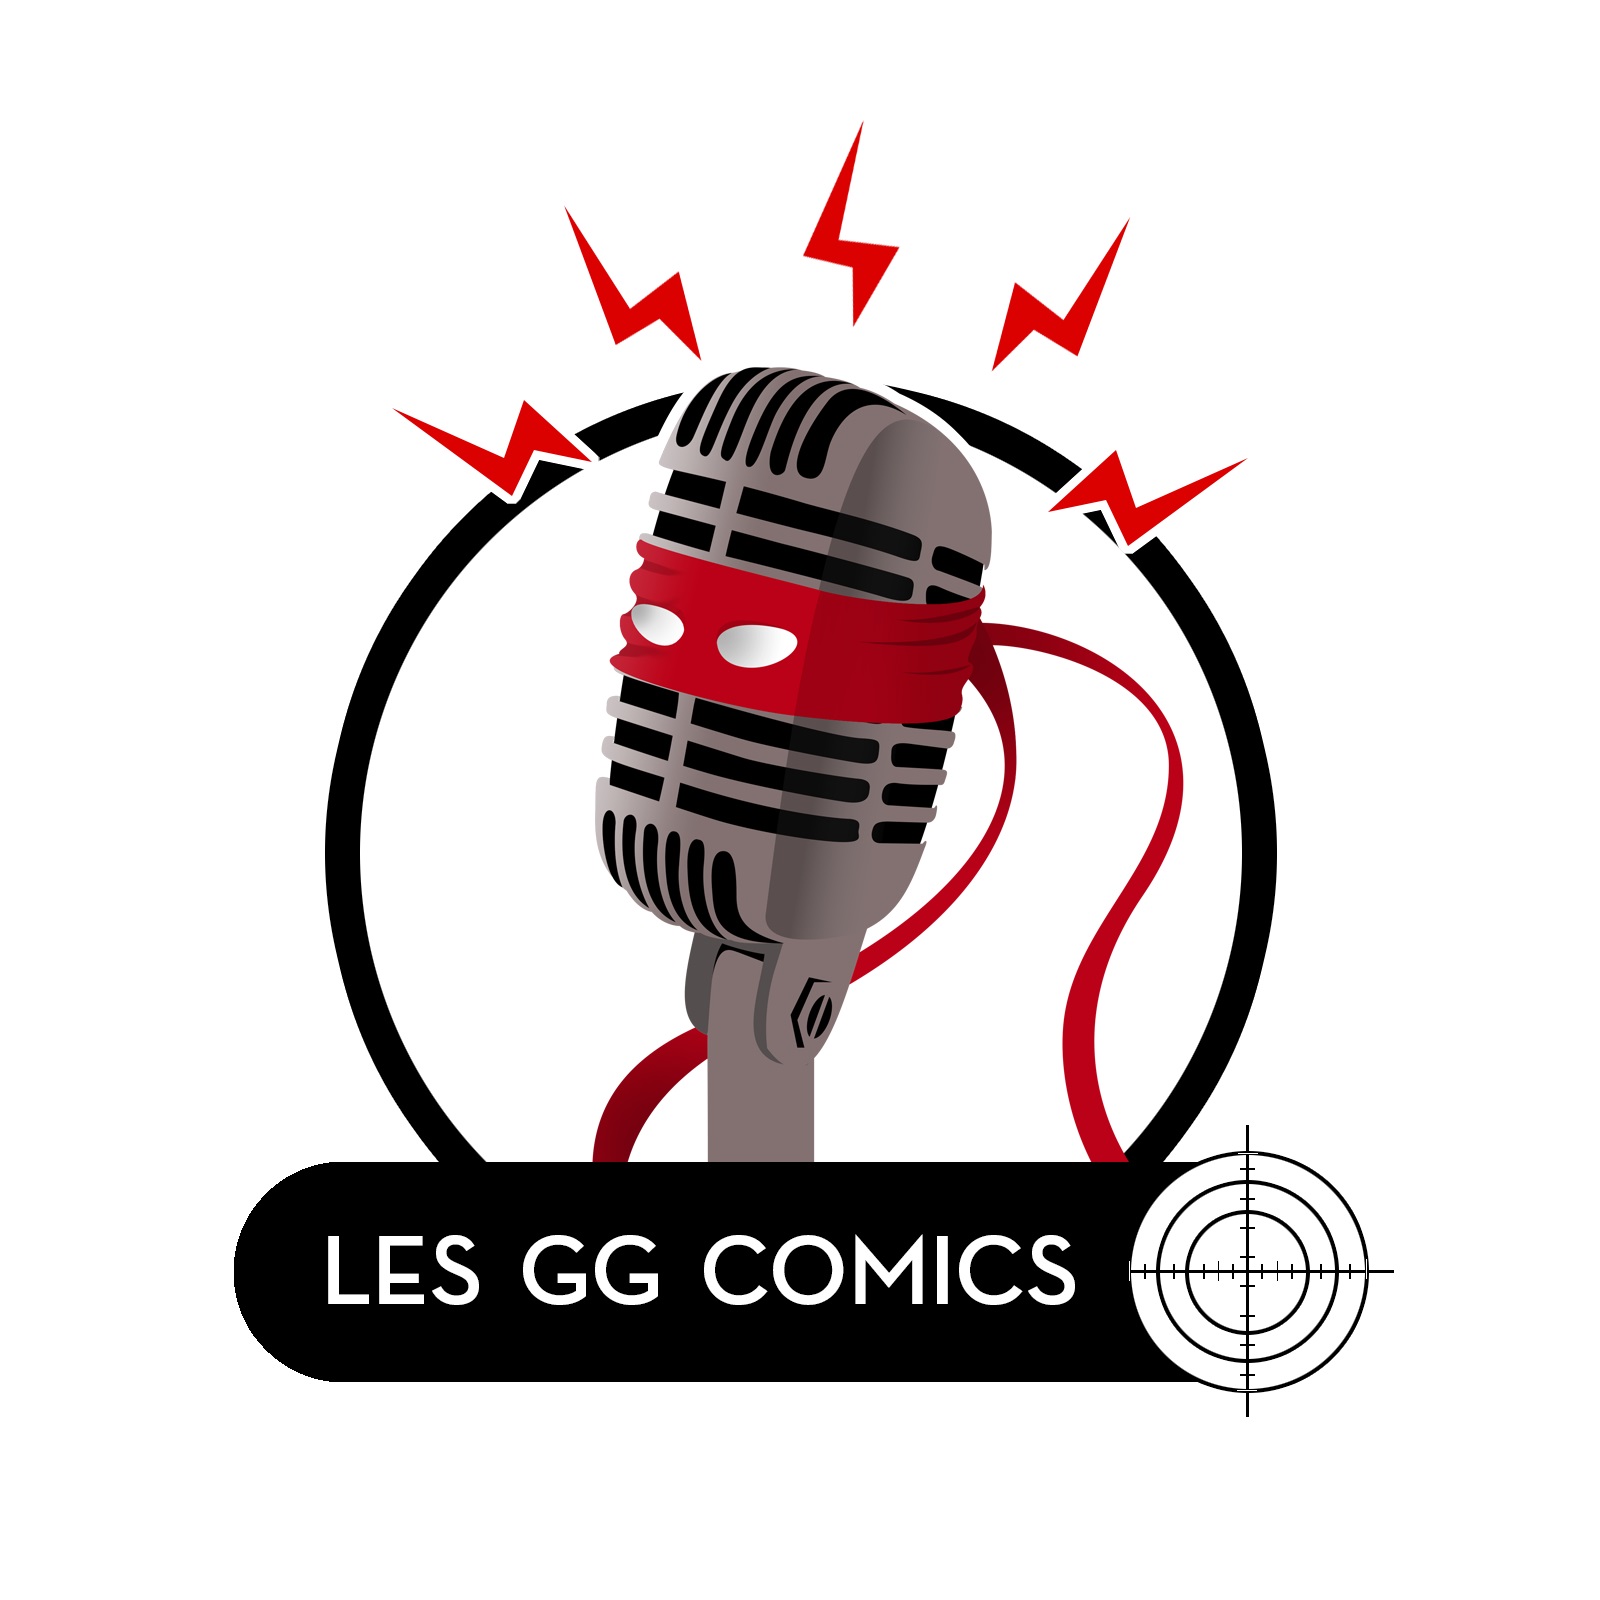 Les GG Comics #81 : Le procès des GG Comics - Batman est-il réactionnaire ?